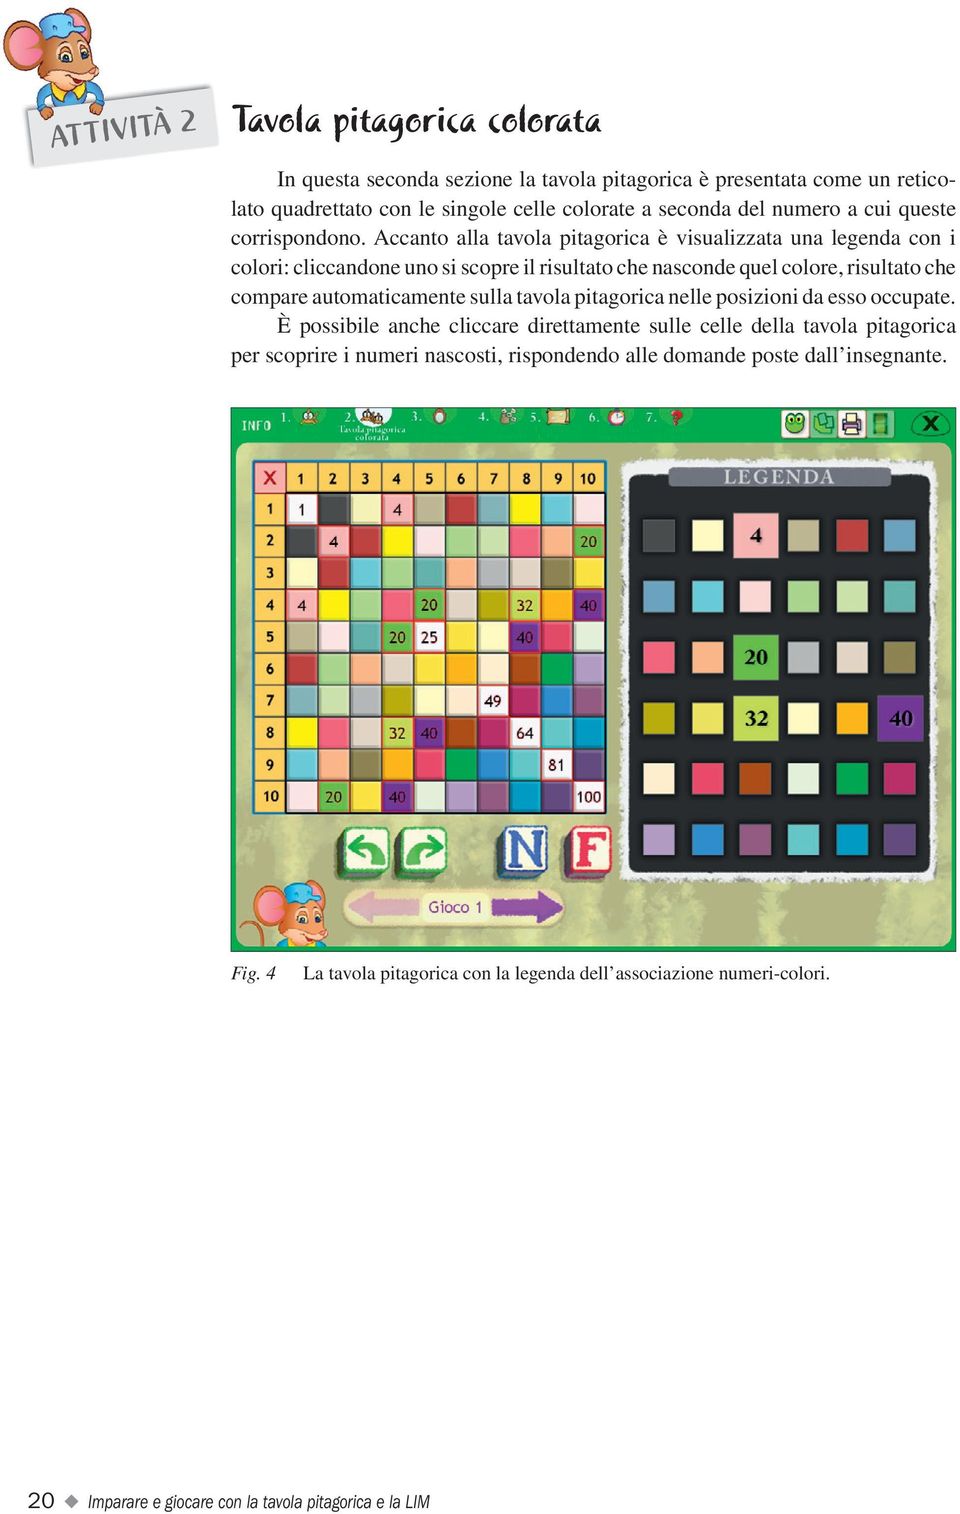 Accanto alla tavola pitagorica è visualizzata una legenda con i colori: cliccandone uno si scopre il risultato che nasconde quel colore, risultato che compare automaticamente sulla